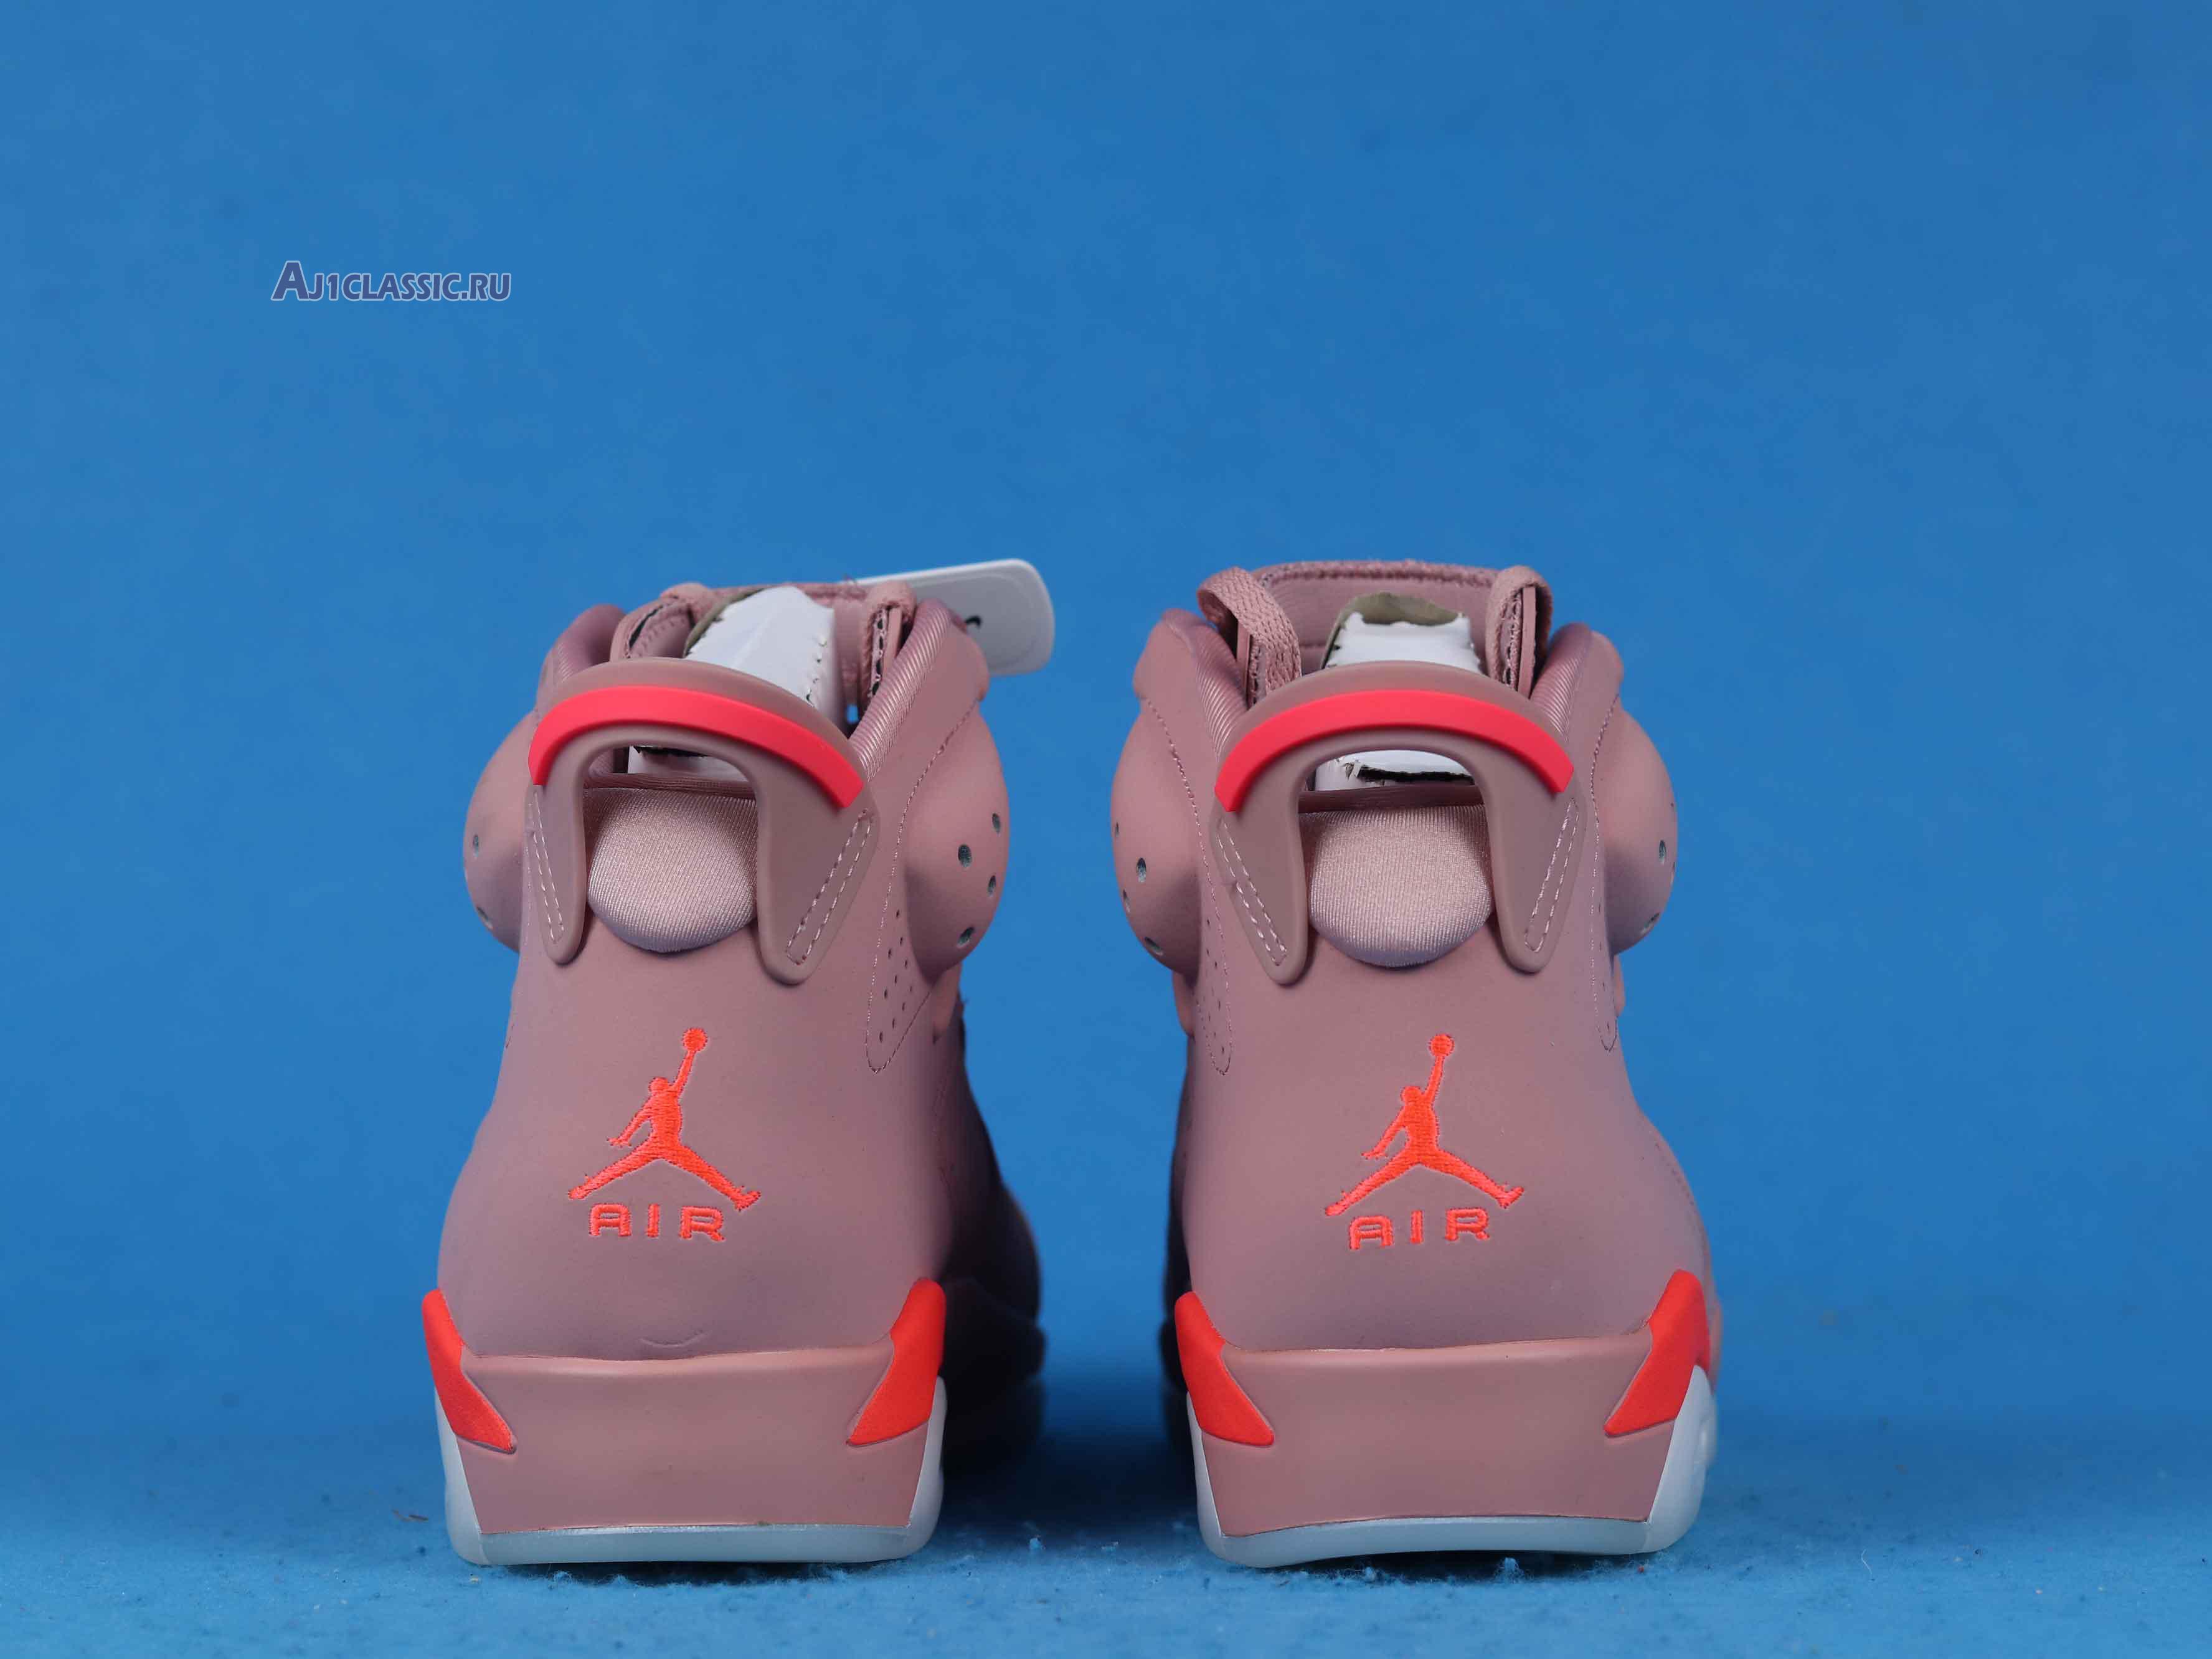 Aleali May x Air Jordan 6 "Millennial Pink" CI0550-600